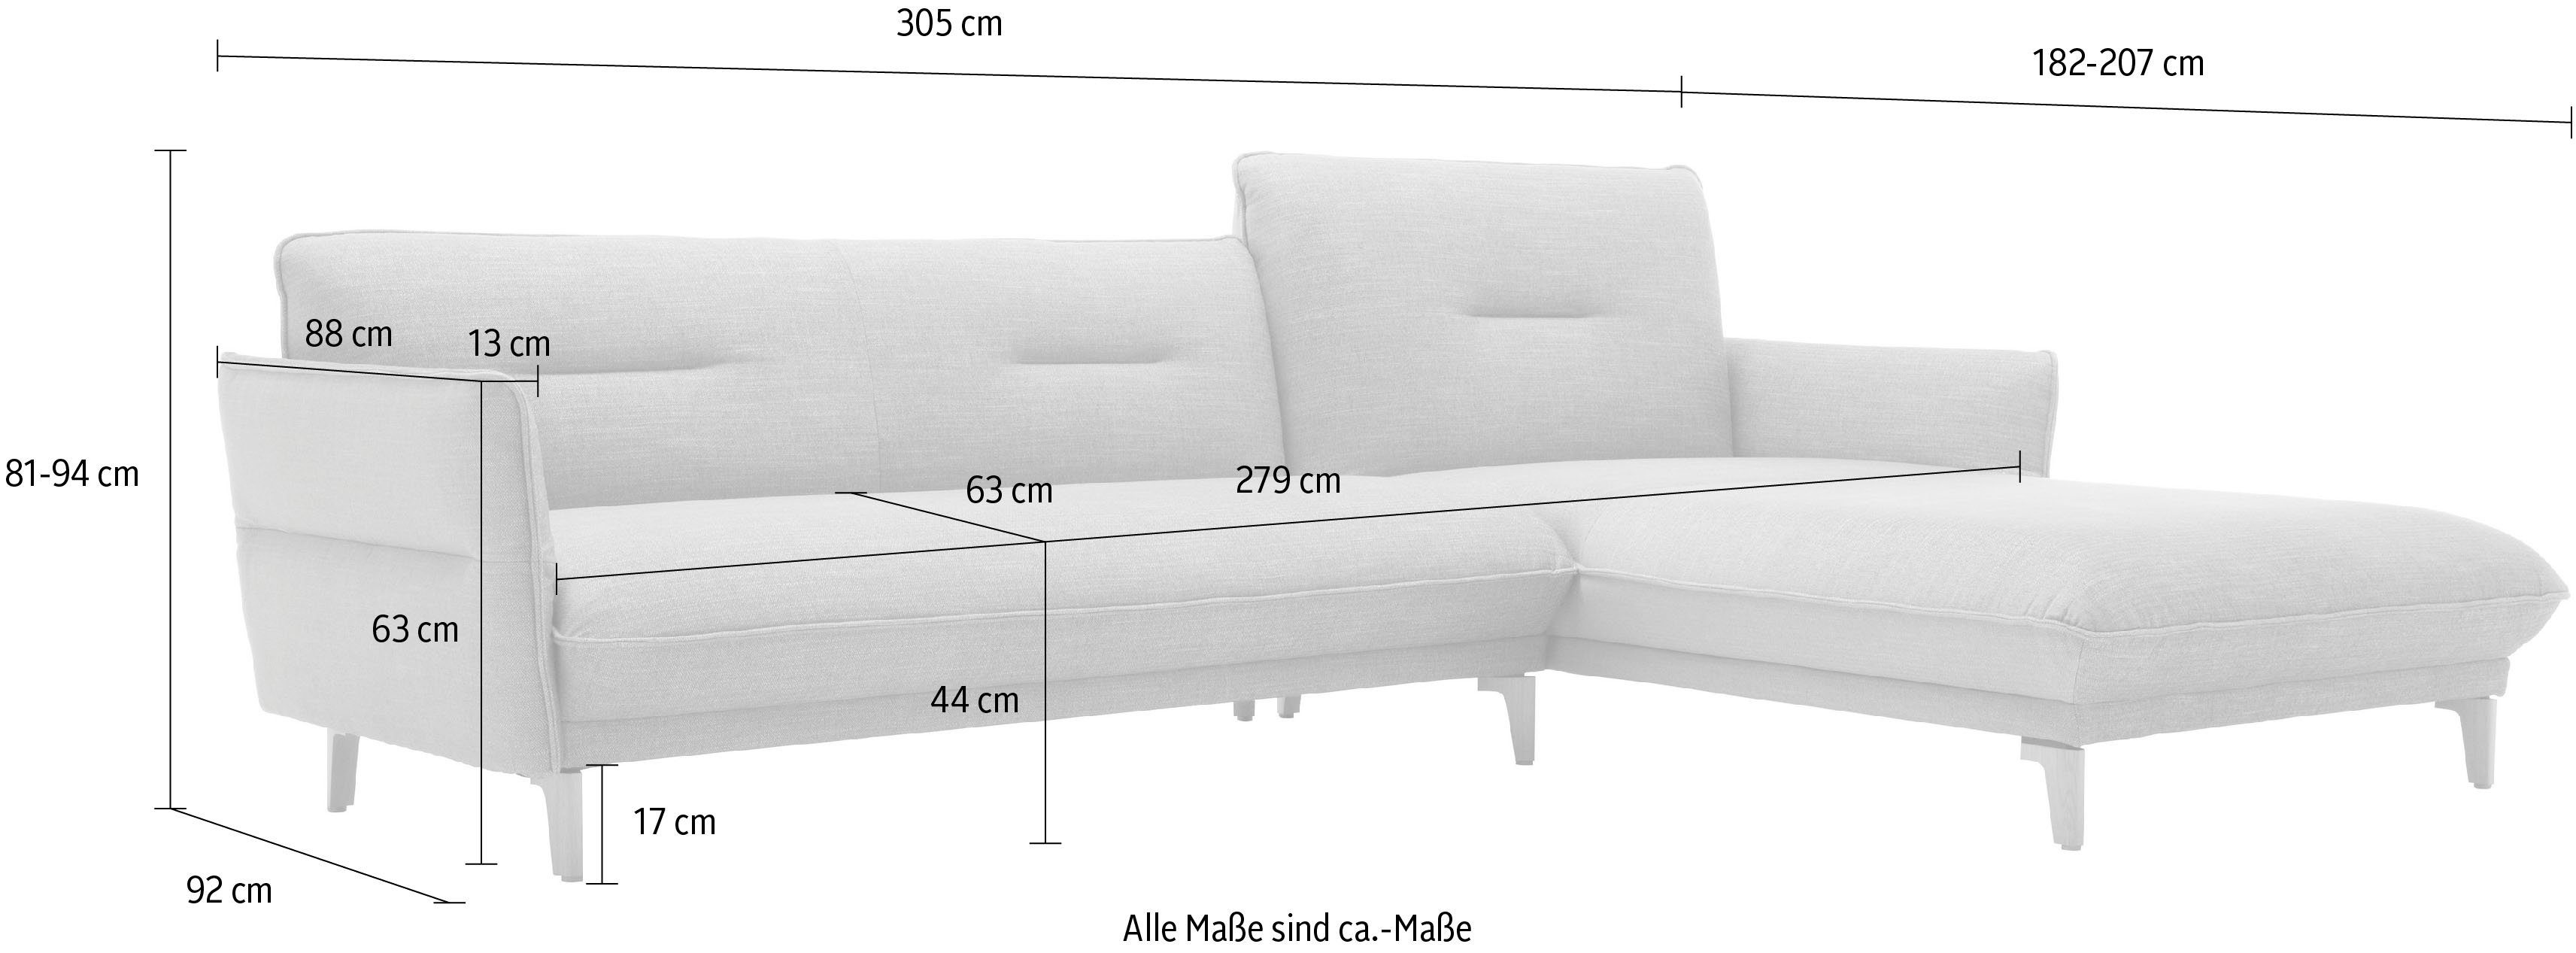 Rücken 068-20 cm hs.430, sofa Breite Ecksofa Recamiere Neigefunktion, 305 mit beige hülsta hoher